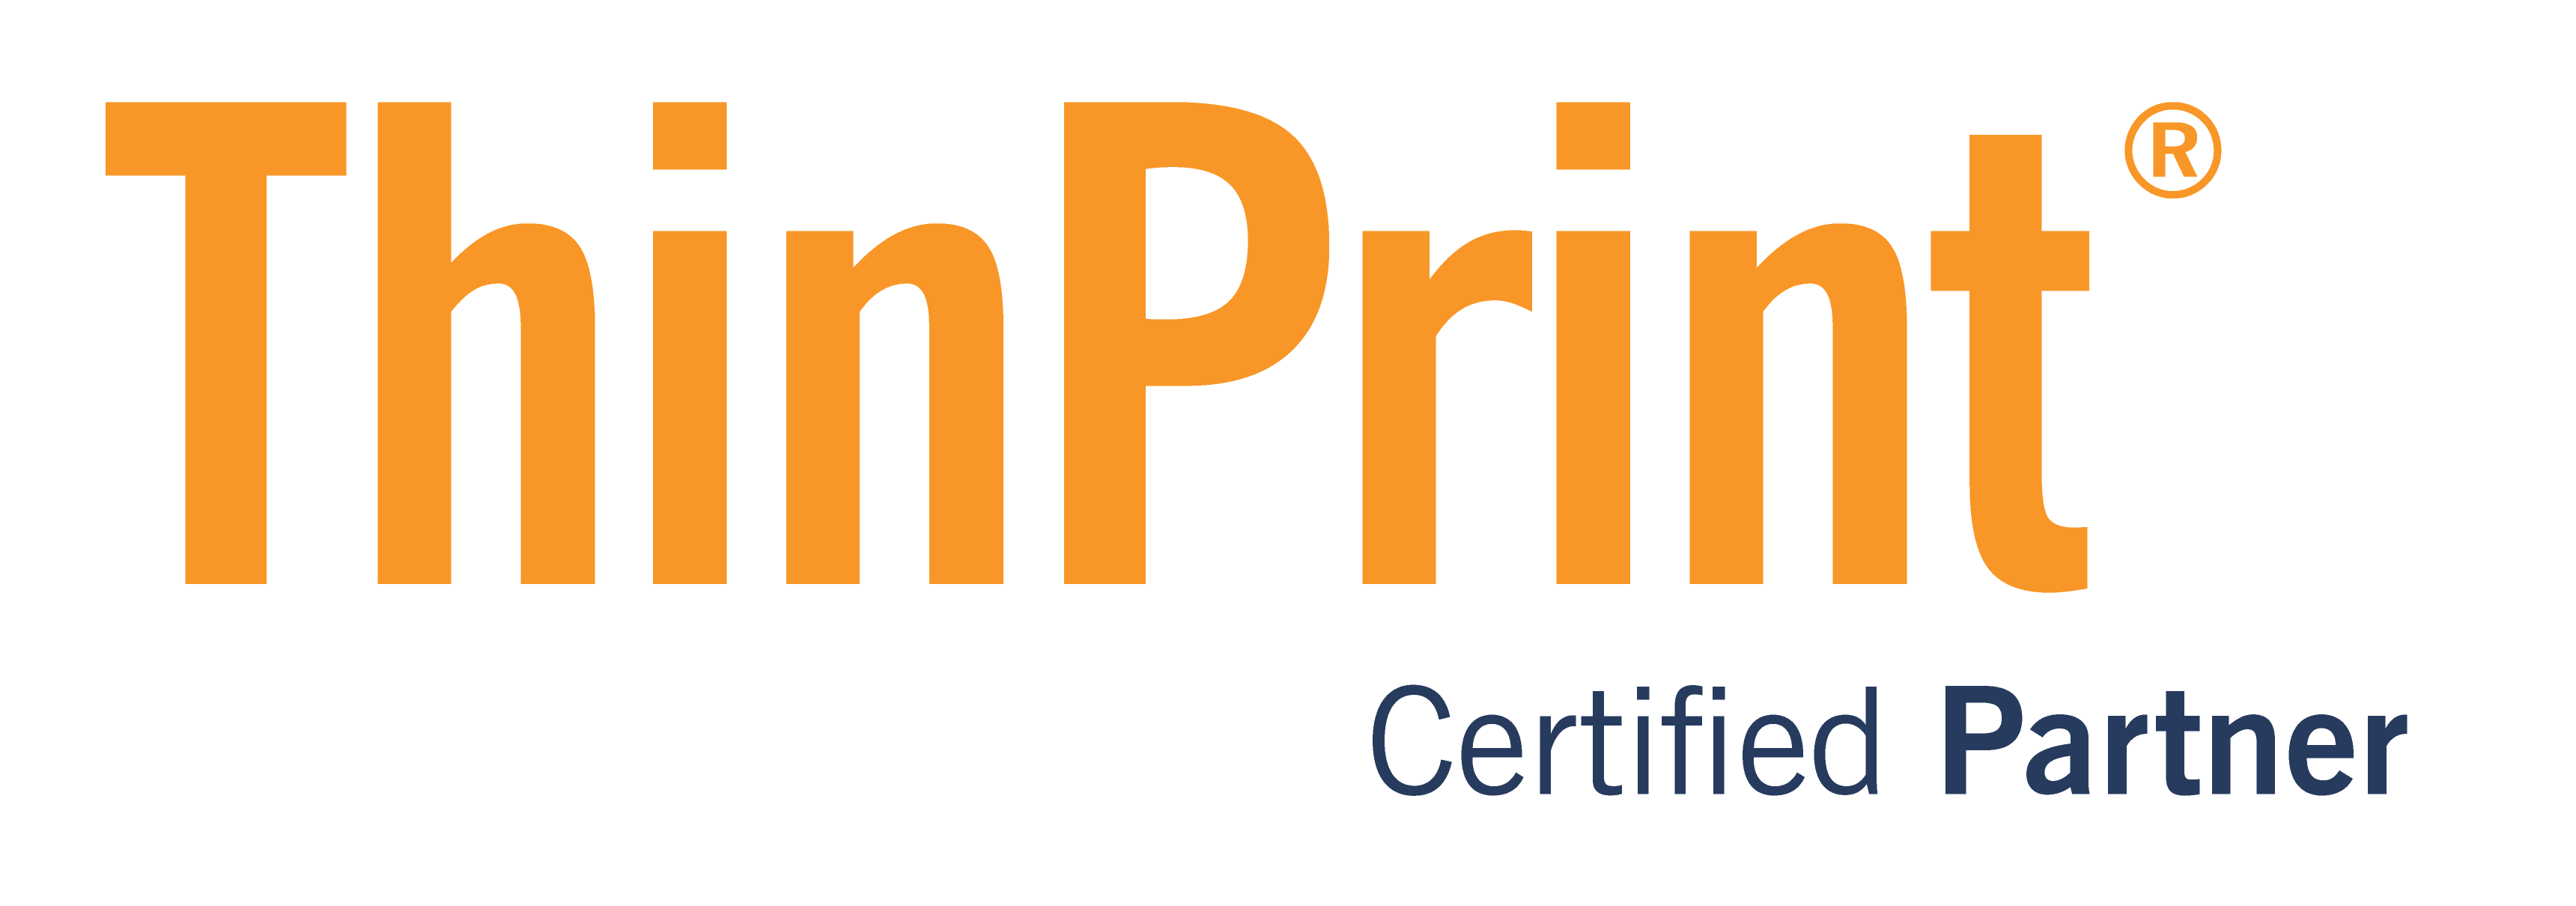 thinprint-certified-partner-logo